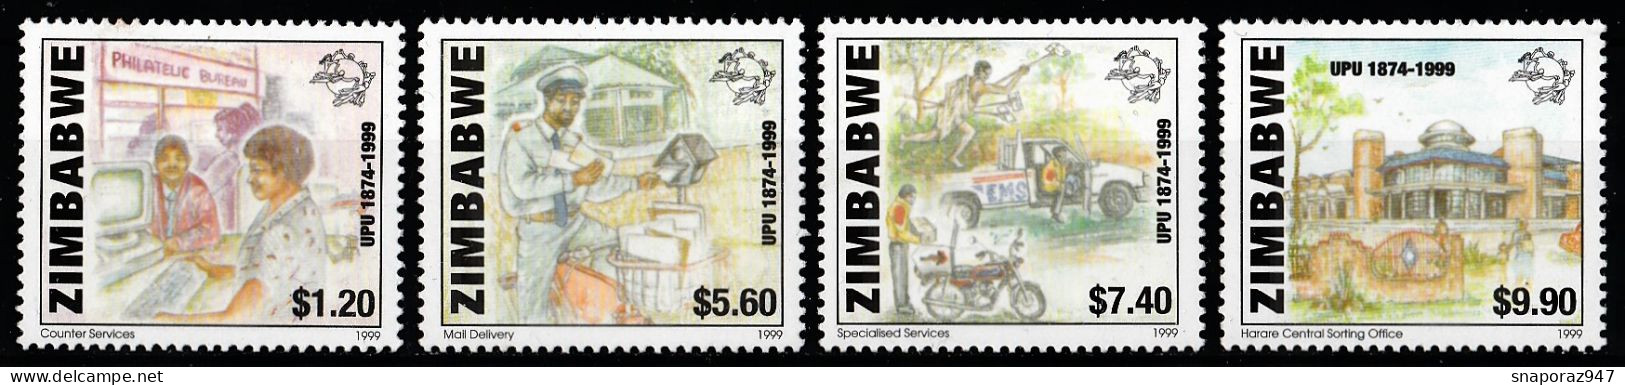 2000 Zimbabwe 125th UPU Set MNH** B578 - UPU (Wereldpostunie)